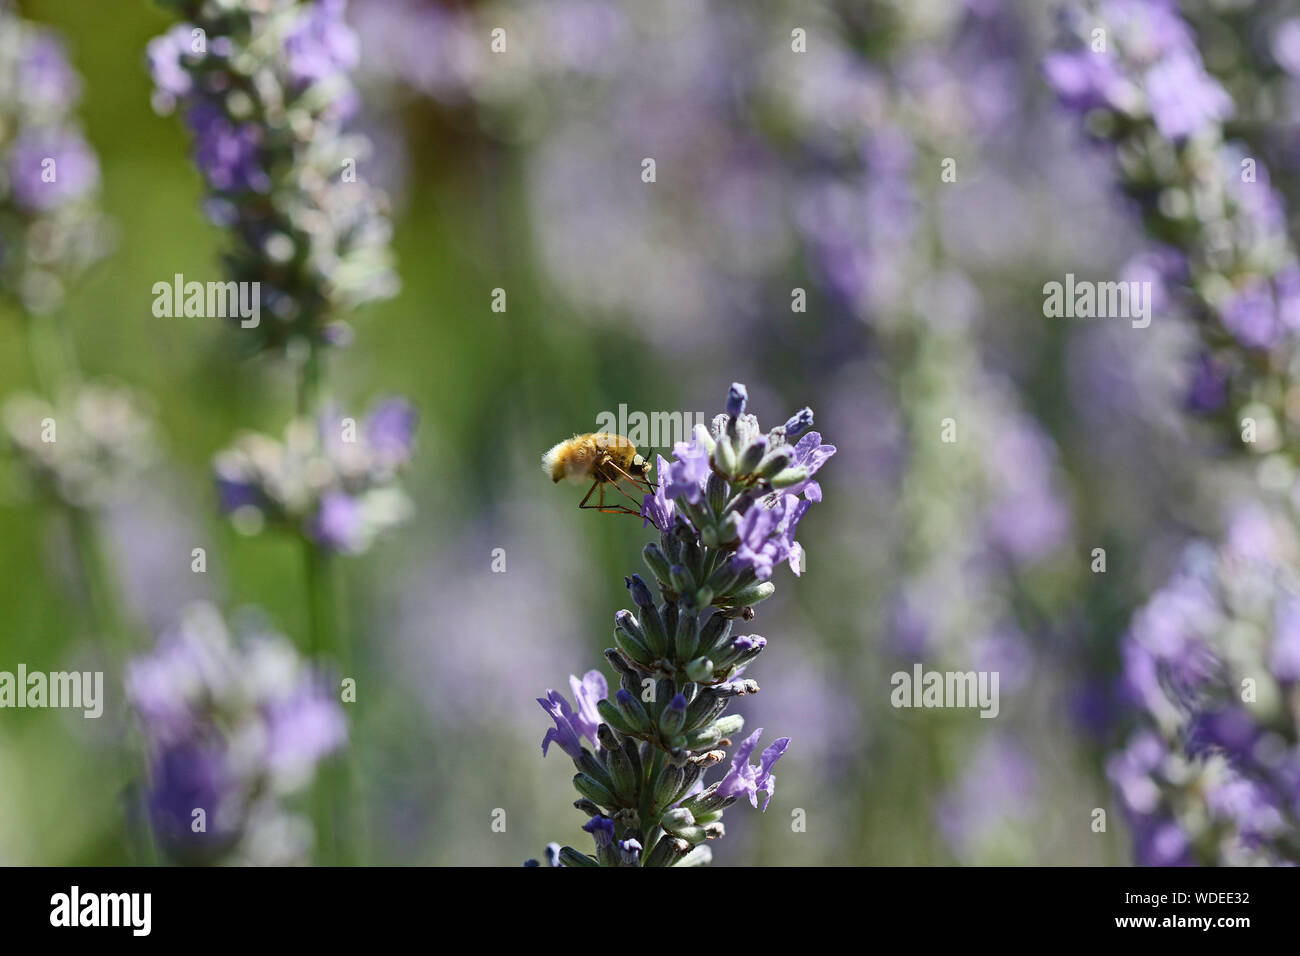 Seltsame furry Biene genannt, eine Biene fliegt, beefly oder Bee - Lateinischer Name bombylius major Fütterung auf Lateinisch lavandula Lavendel Blume in Italien fliegen Stockfoto